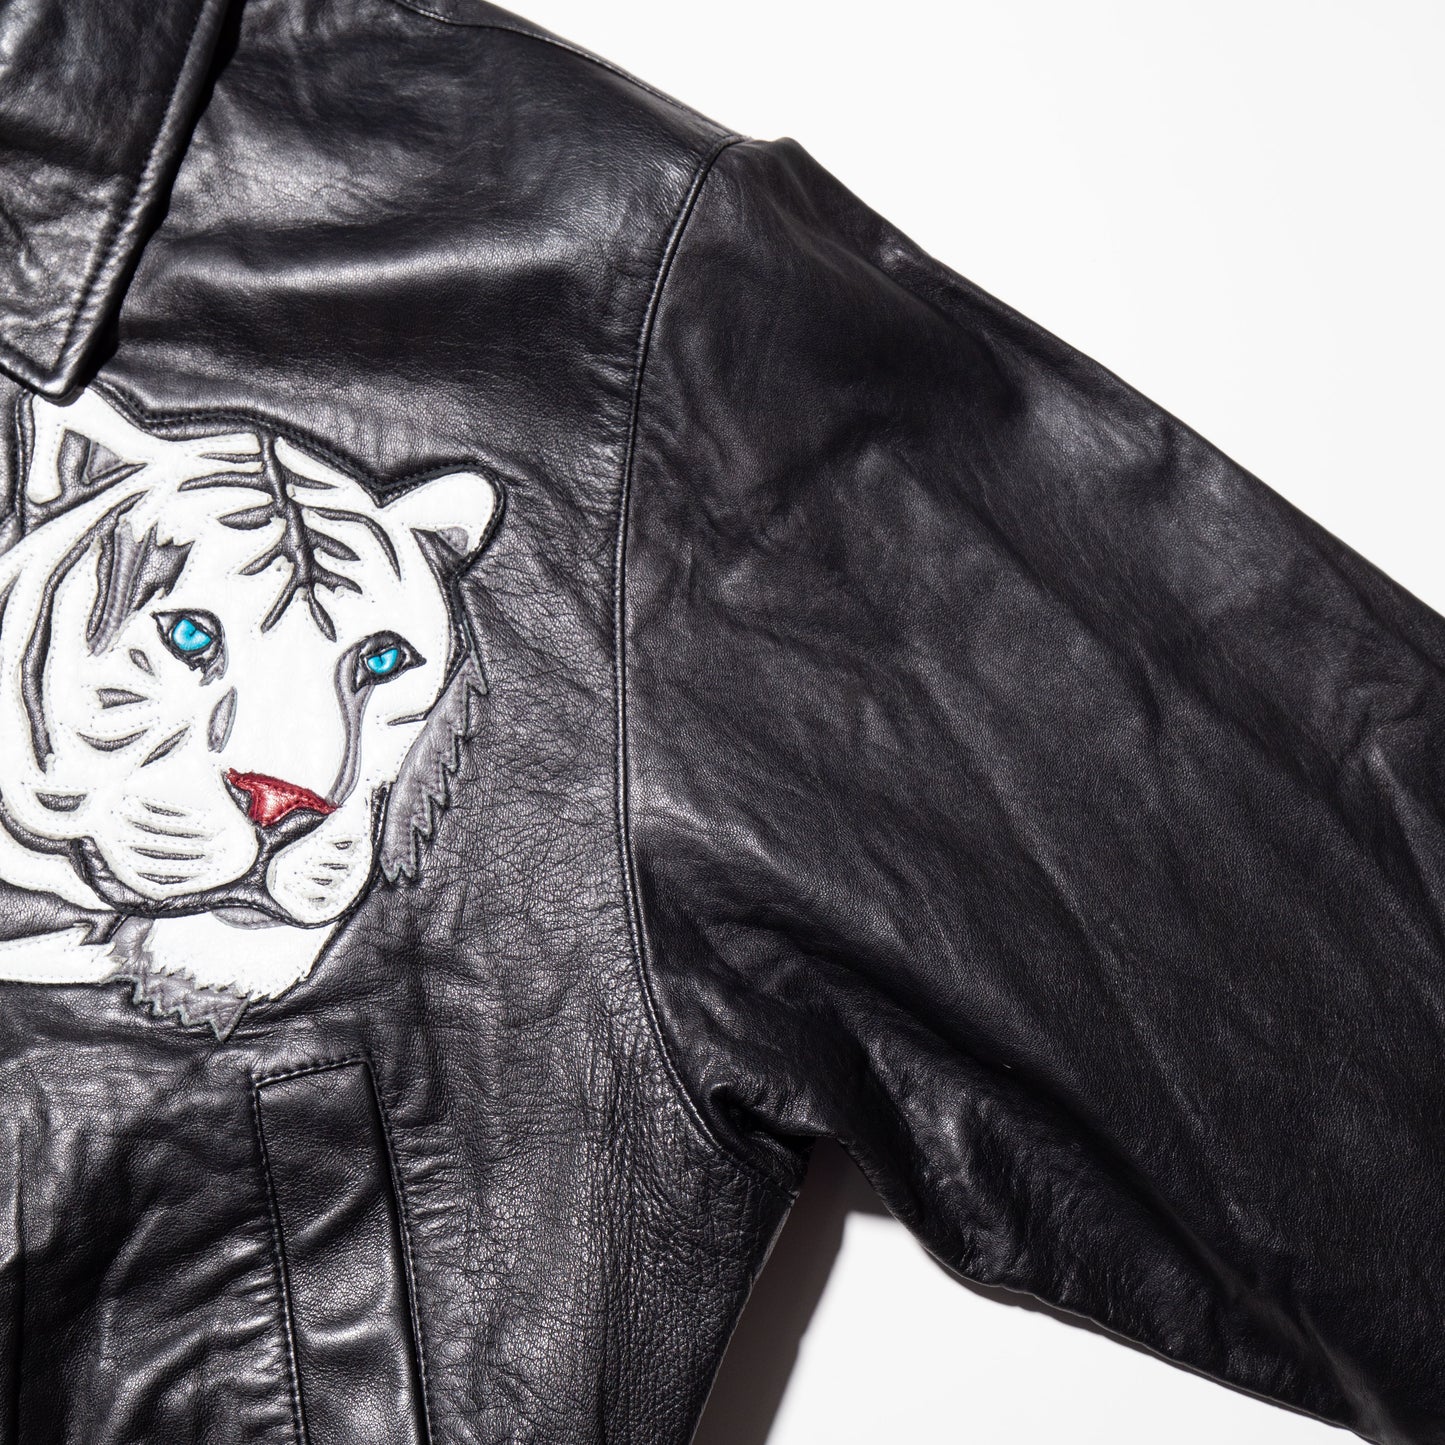 vintage tiger short leather jacket